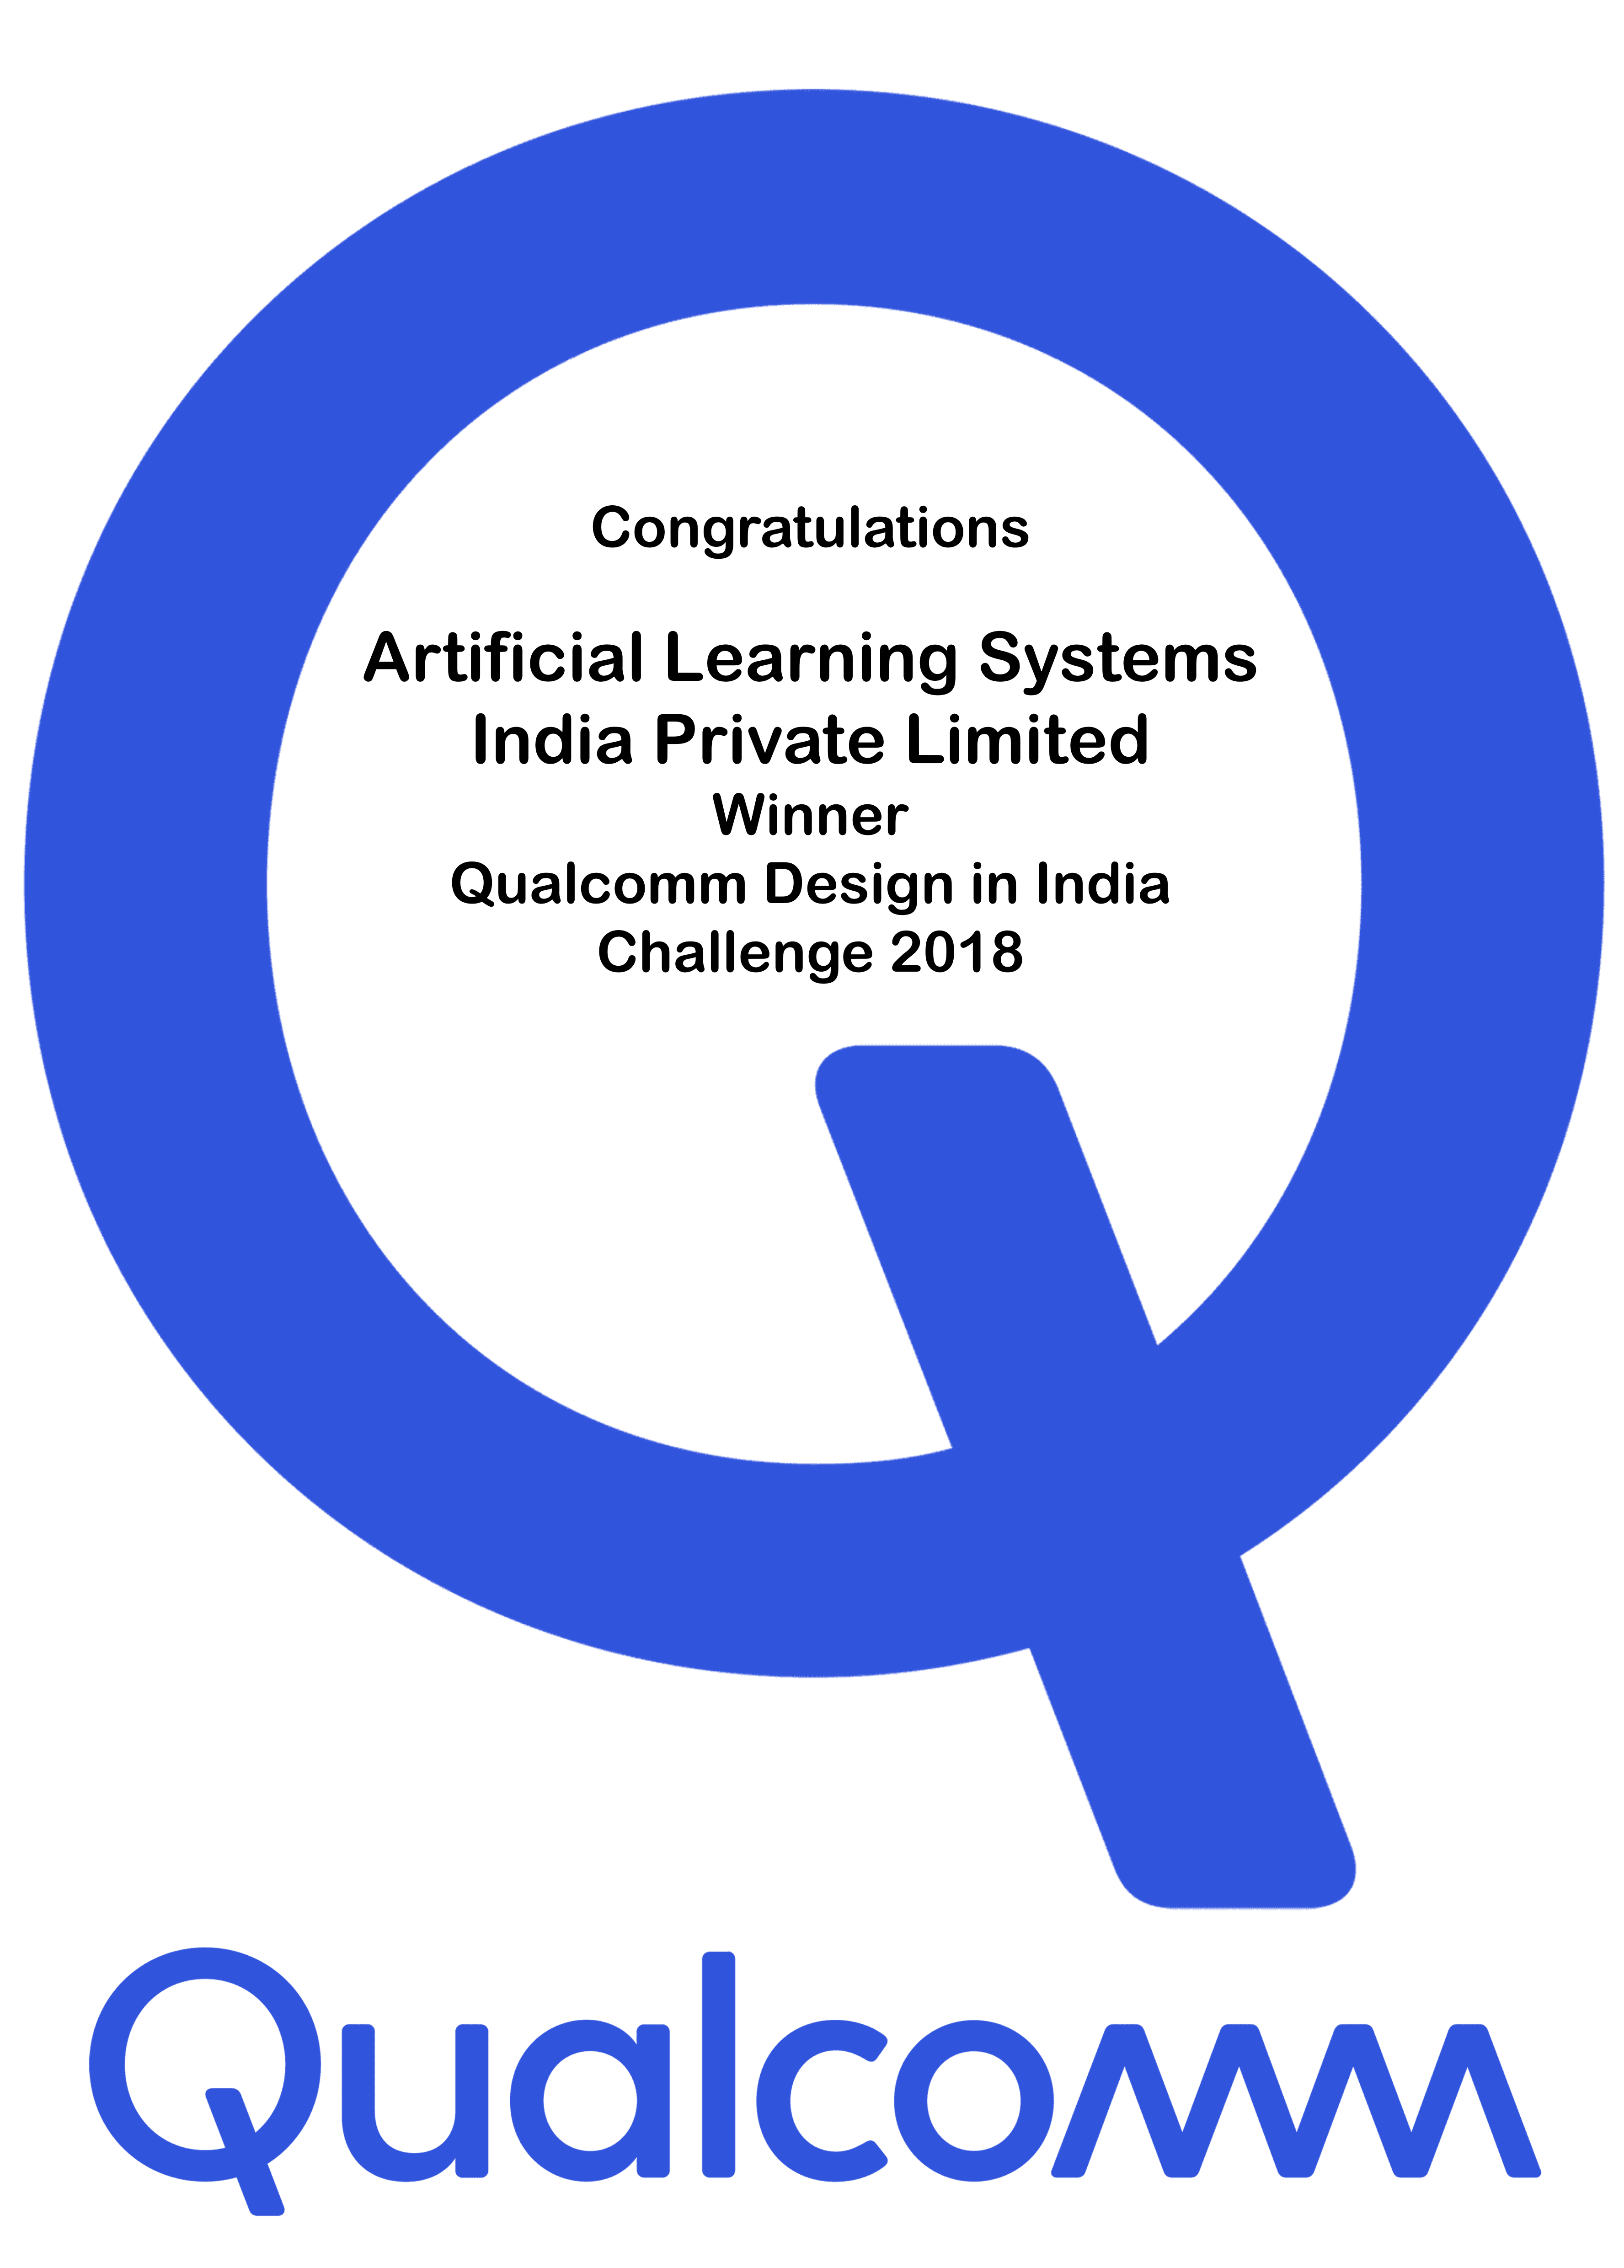 Qualcomm design in India